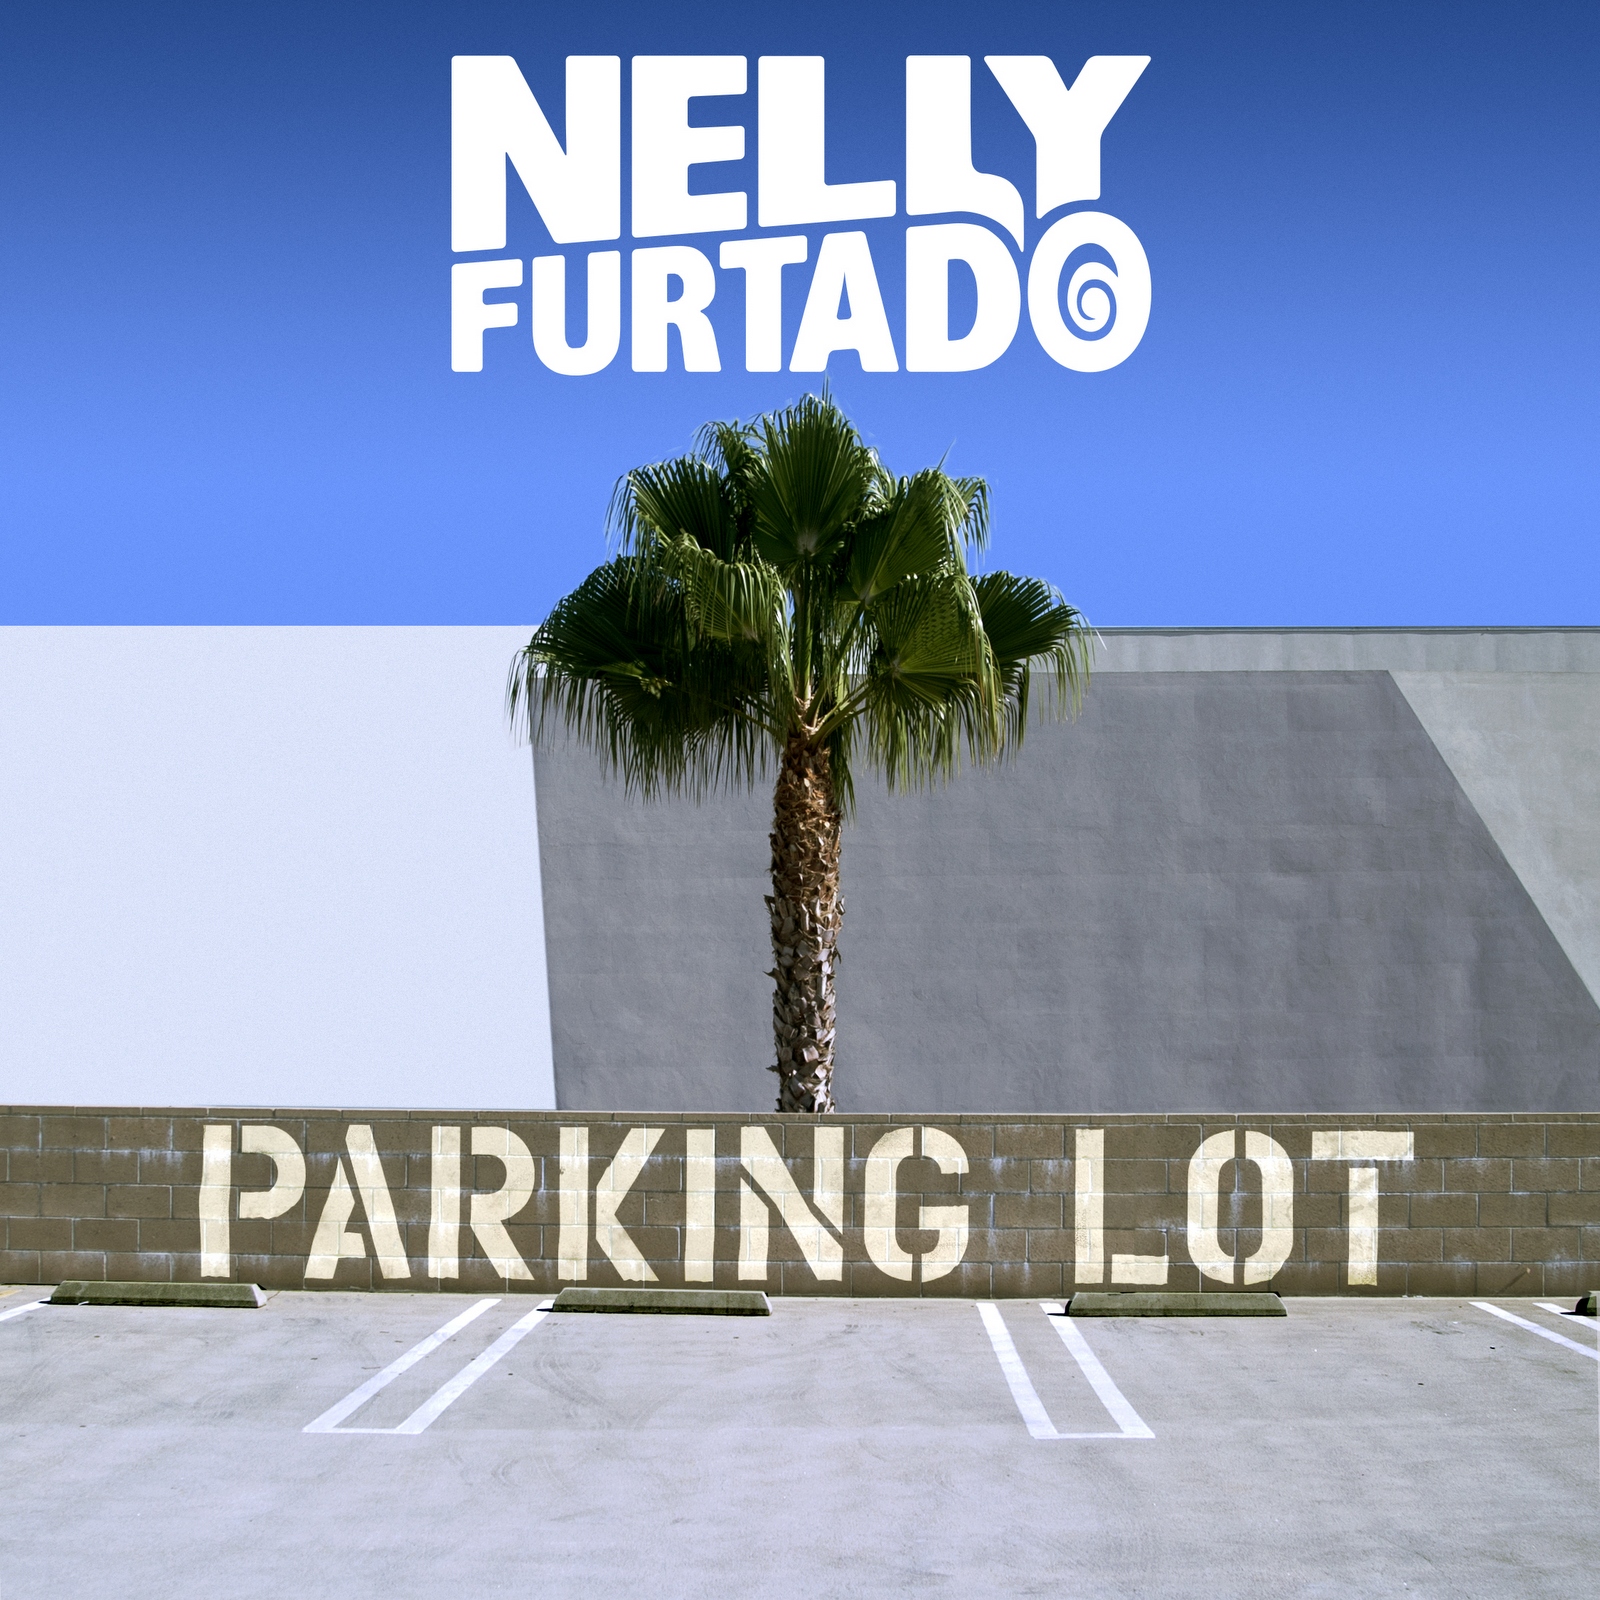 http://4.bp.blogspot.com/-2UZK2x53wiU/UDNZNtCcpWI/AAAAAAAAJ1I/KRS7u4qhFKg/s1600/Nelly-Furtado-Parking-Lot-Official-2012.png